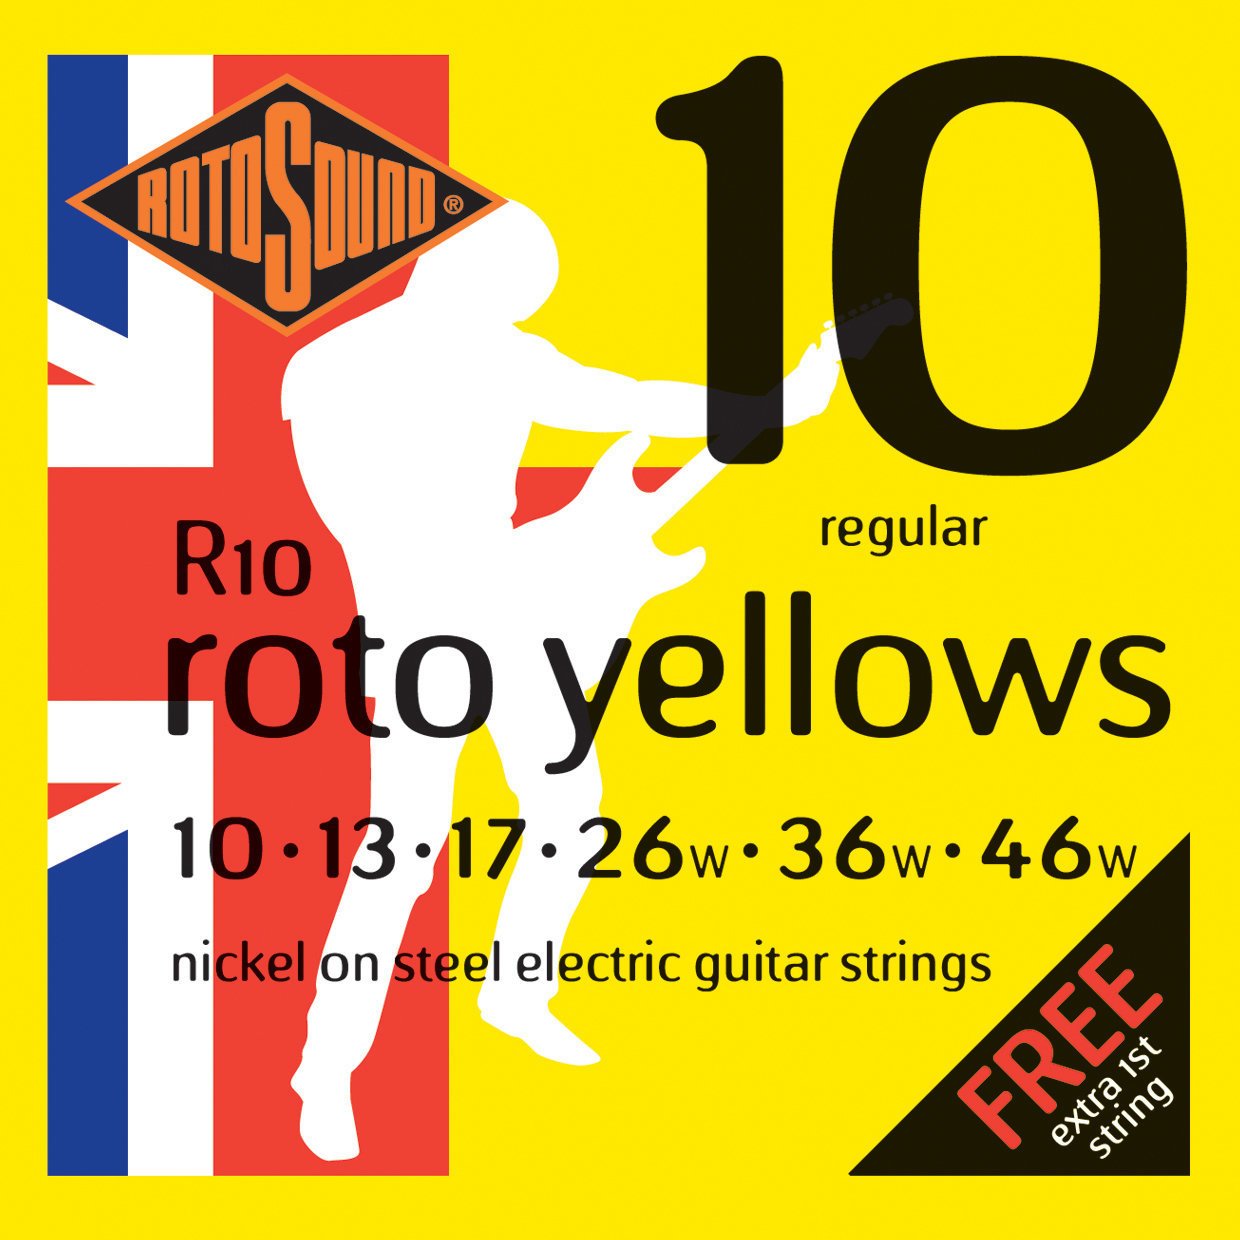 E-guitar strings Rotosound R10